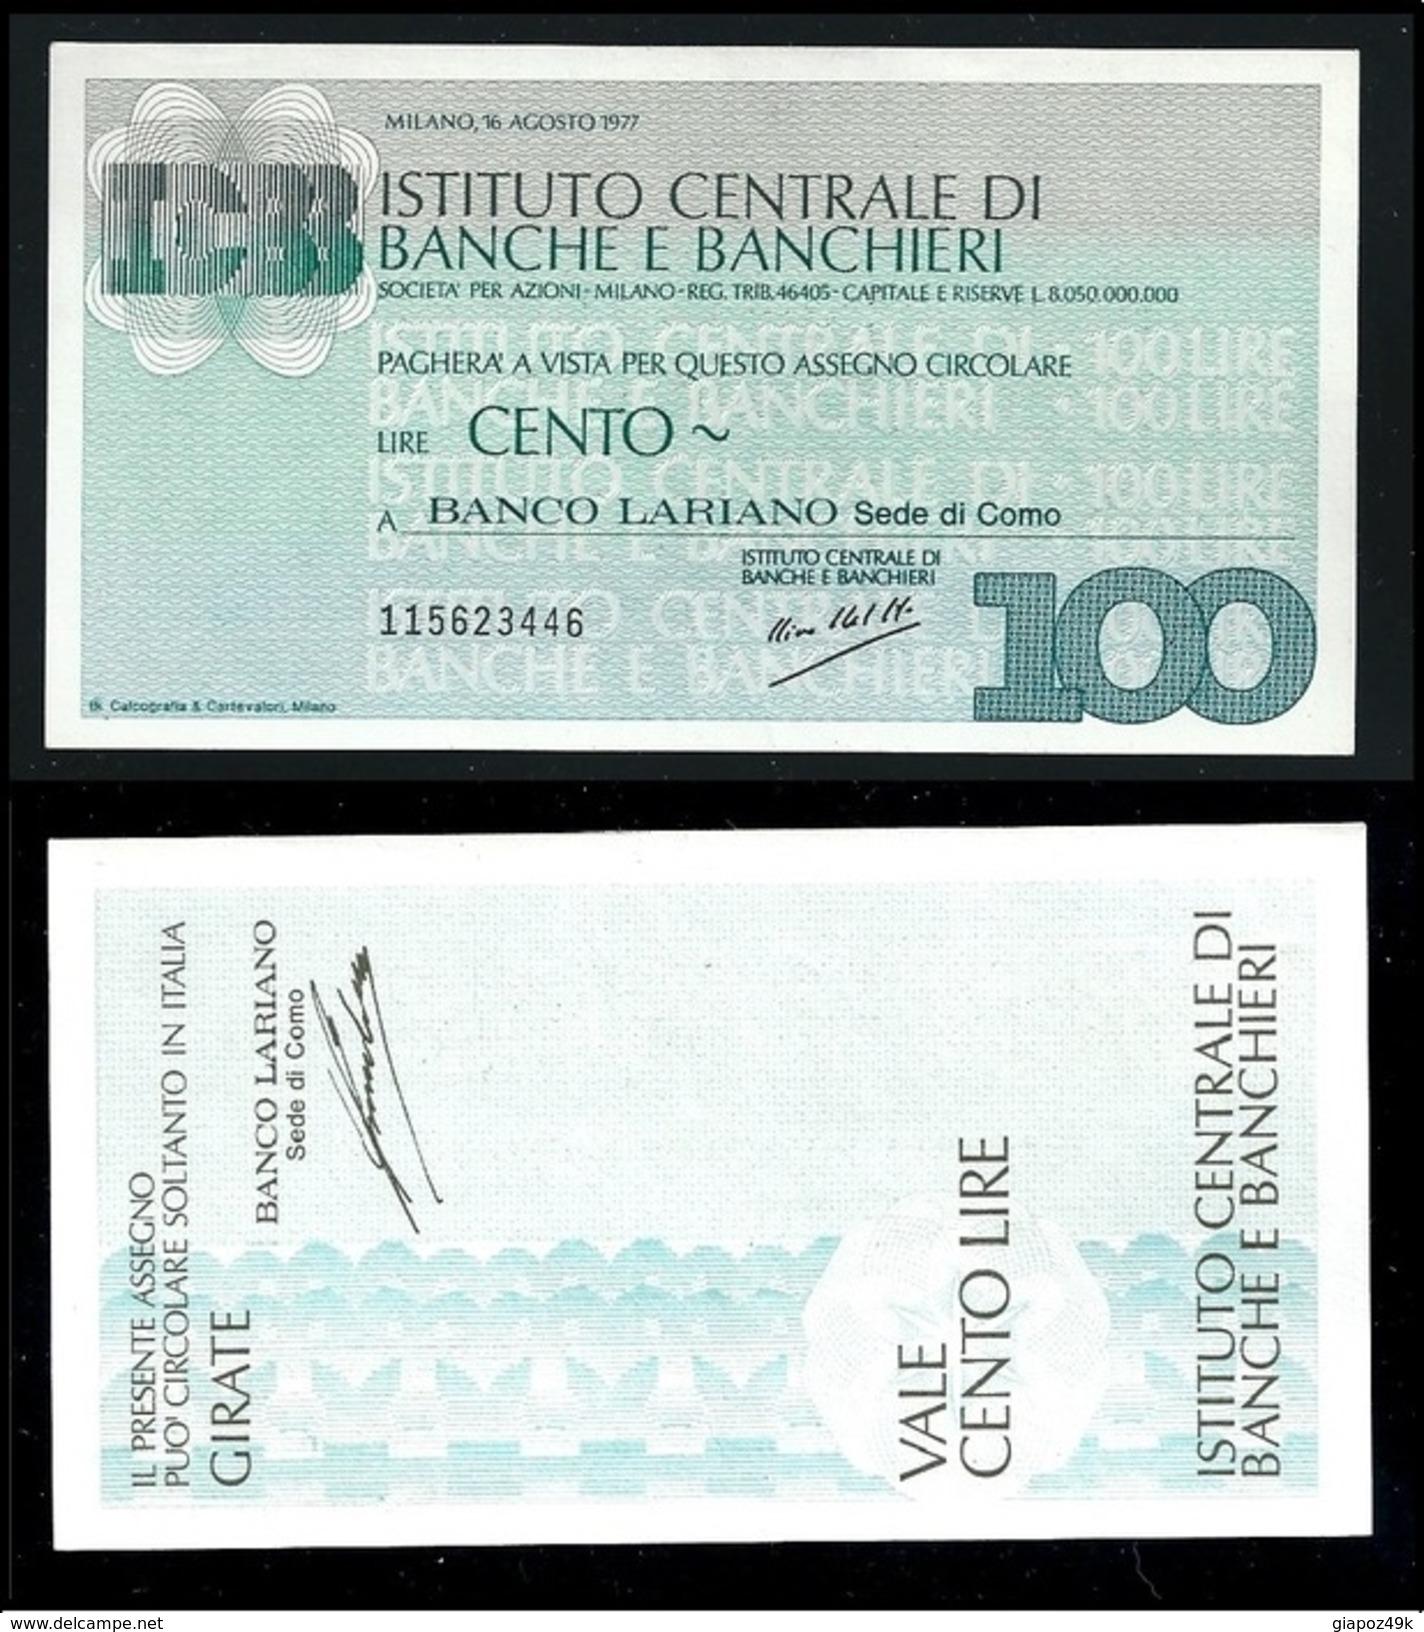 ITALIA 1977 - Mini Assegno - Istituto Centrale Di Banche E Banchieri -  N.°  72 - L. 100 - FDS - [10] Assegni E Miniassegni